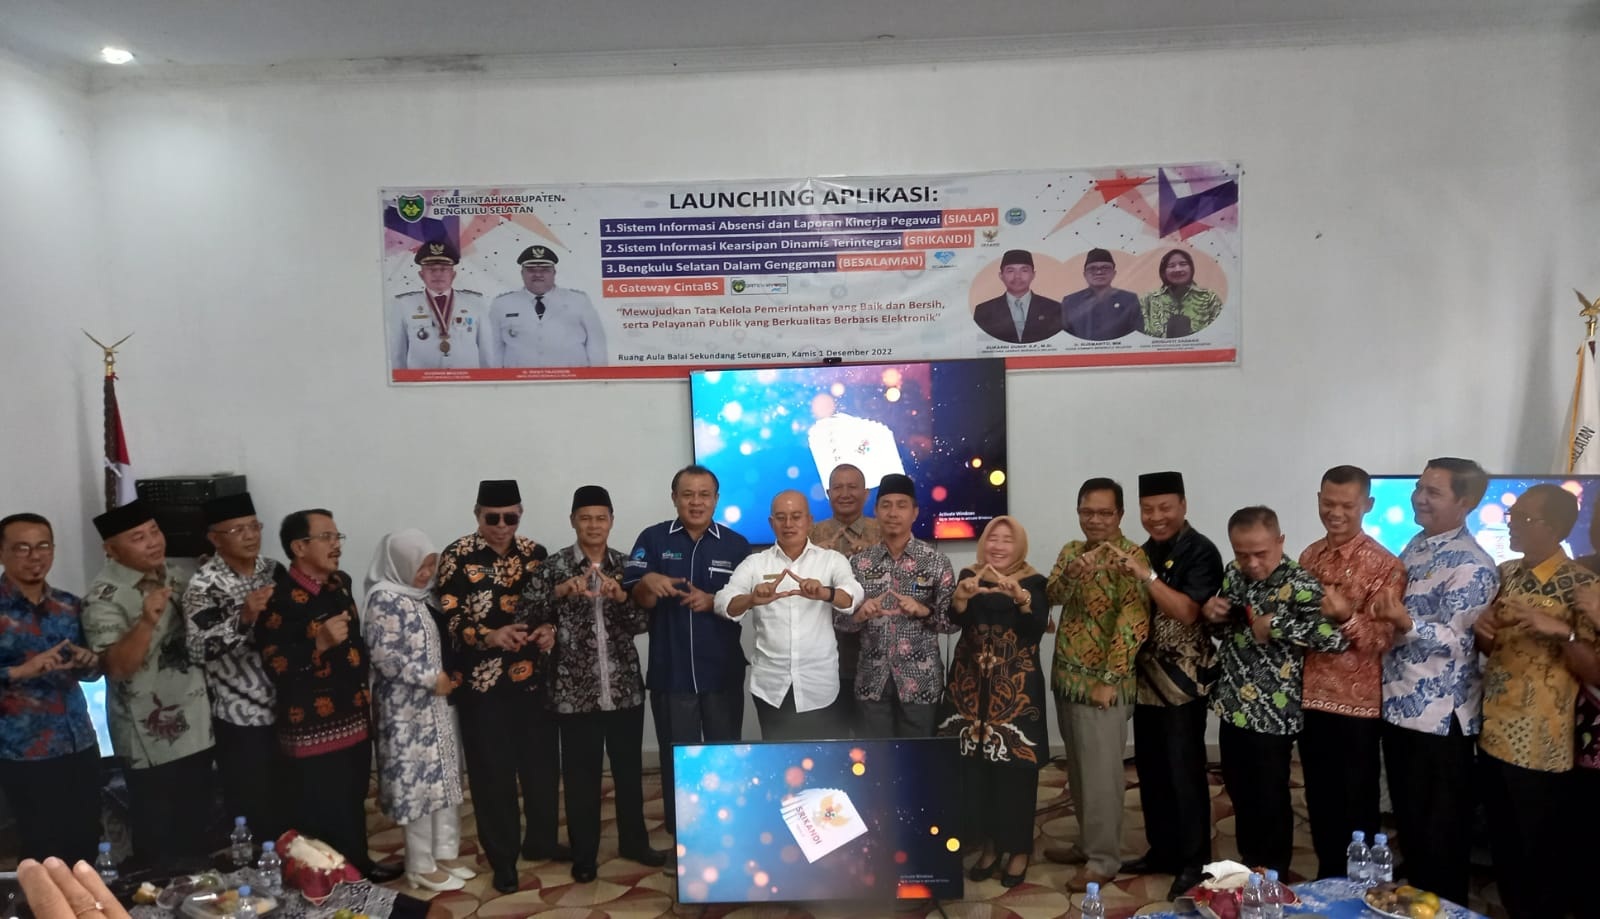 Bupati Bengkulu Selatan Launching Aplikasi Si Alap, Srikandi, Besalaman, dan Gateway Cinta BS